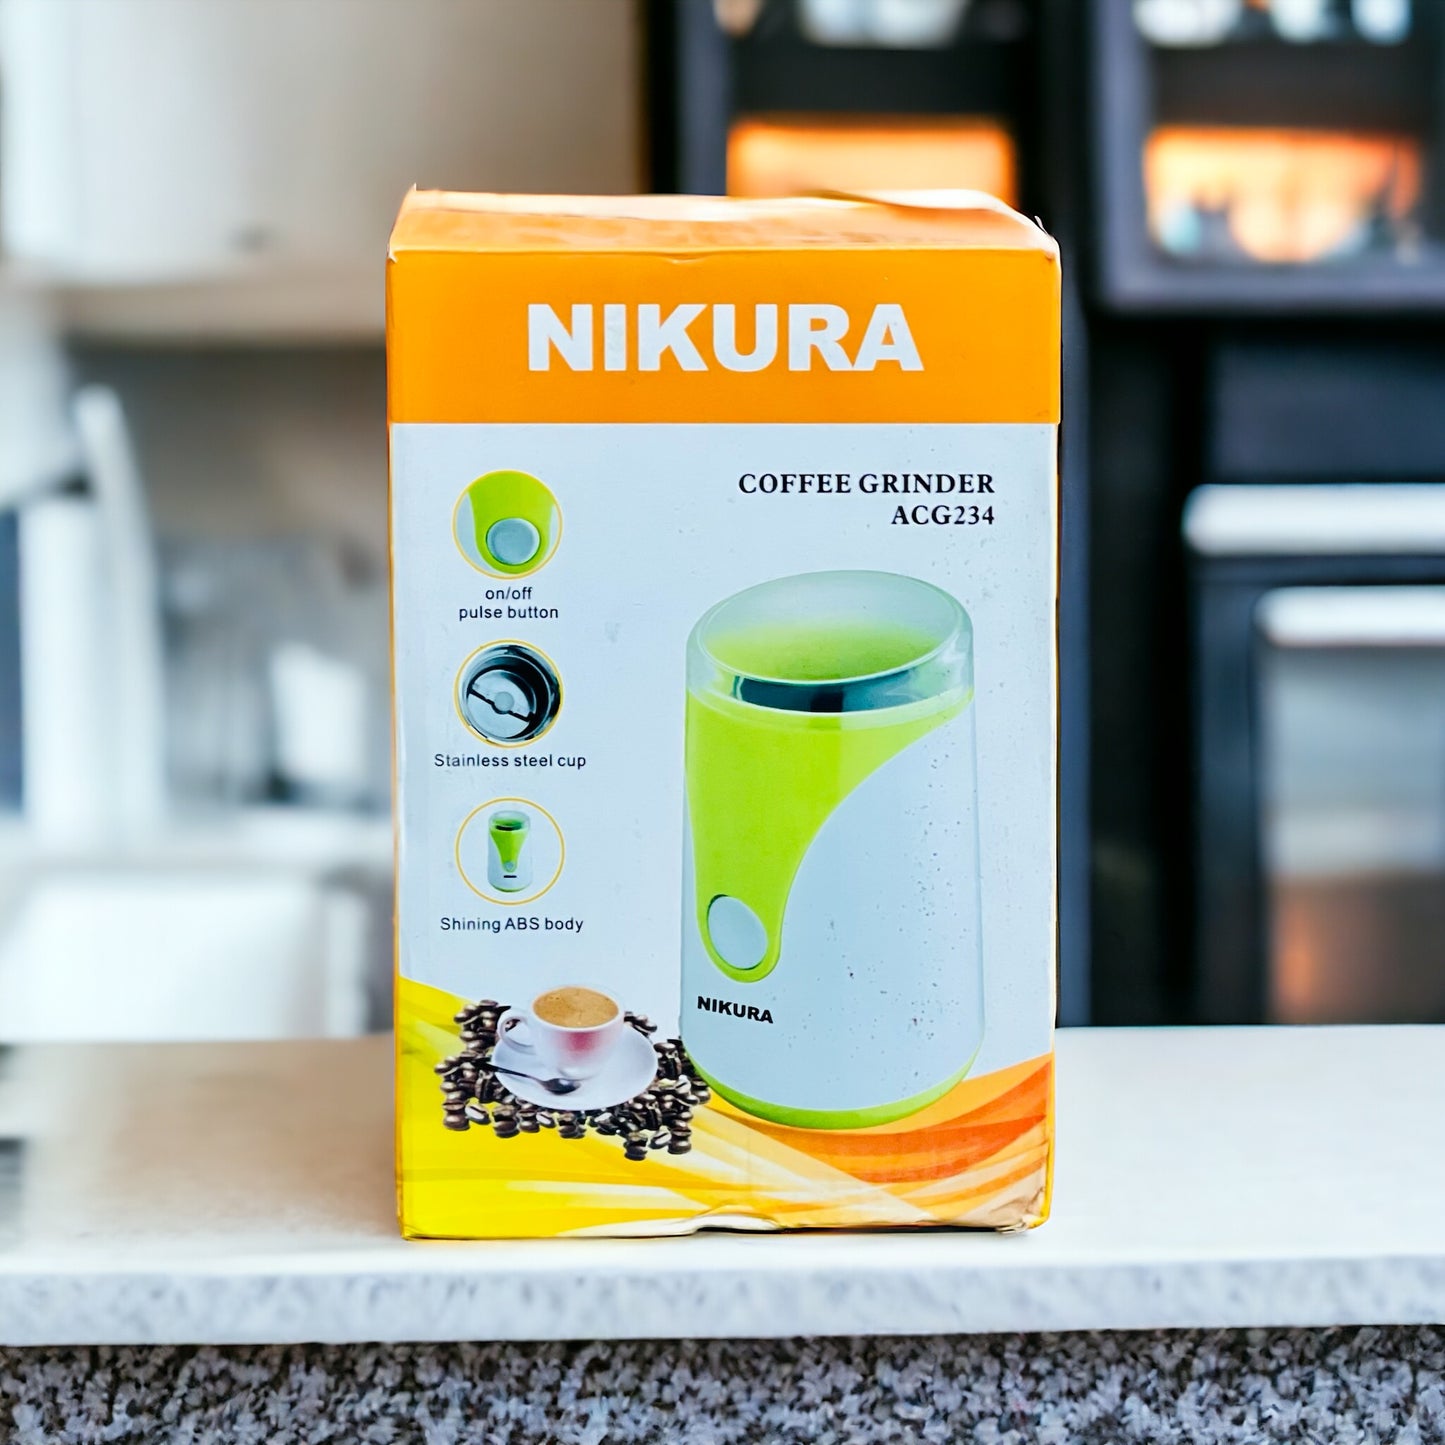 Nikura Coffee Grinder